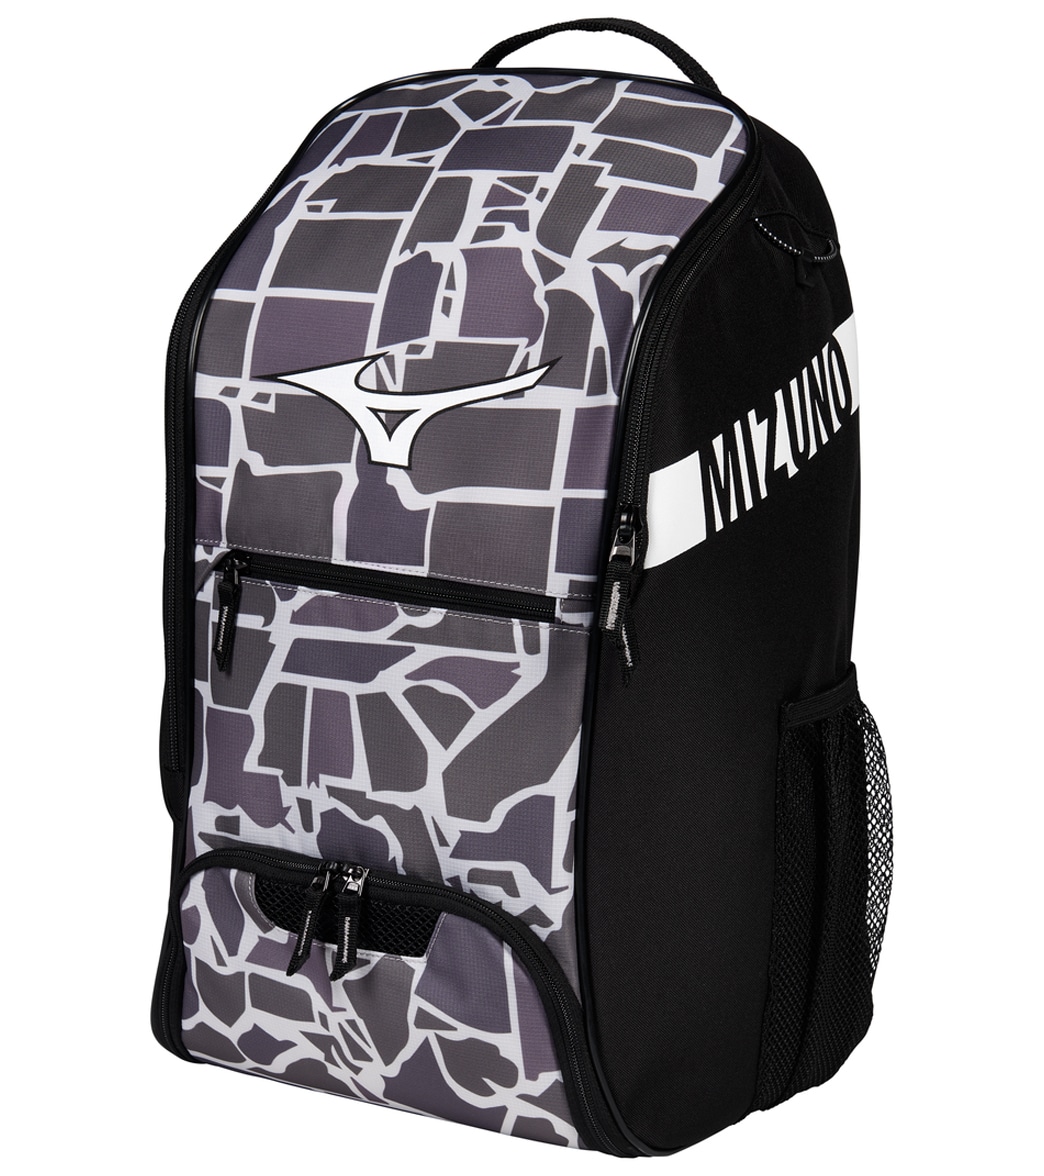 Mizuno Swimwear Crossover 22 Backpack - States Camo One Size - Swimoutlet.com